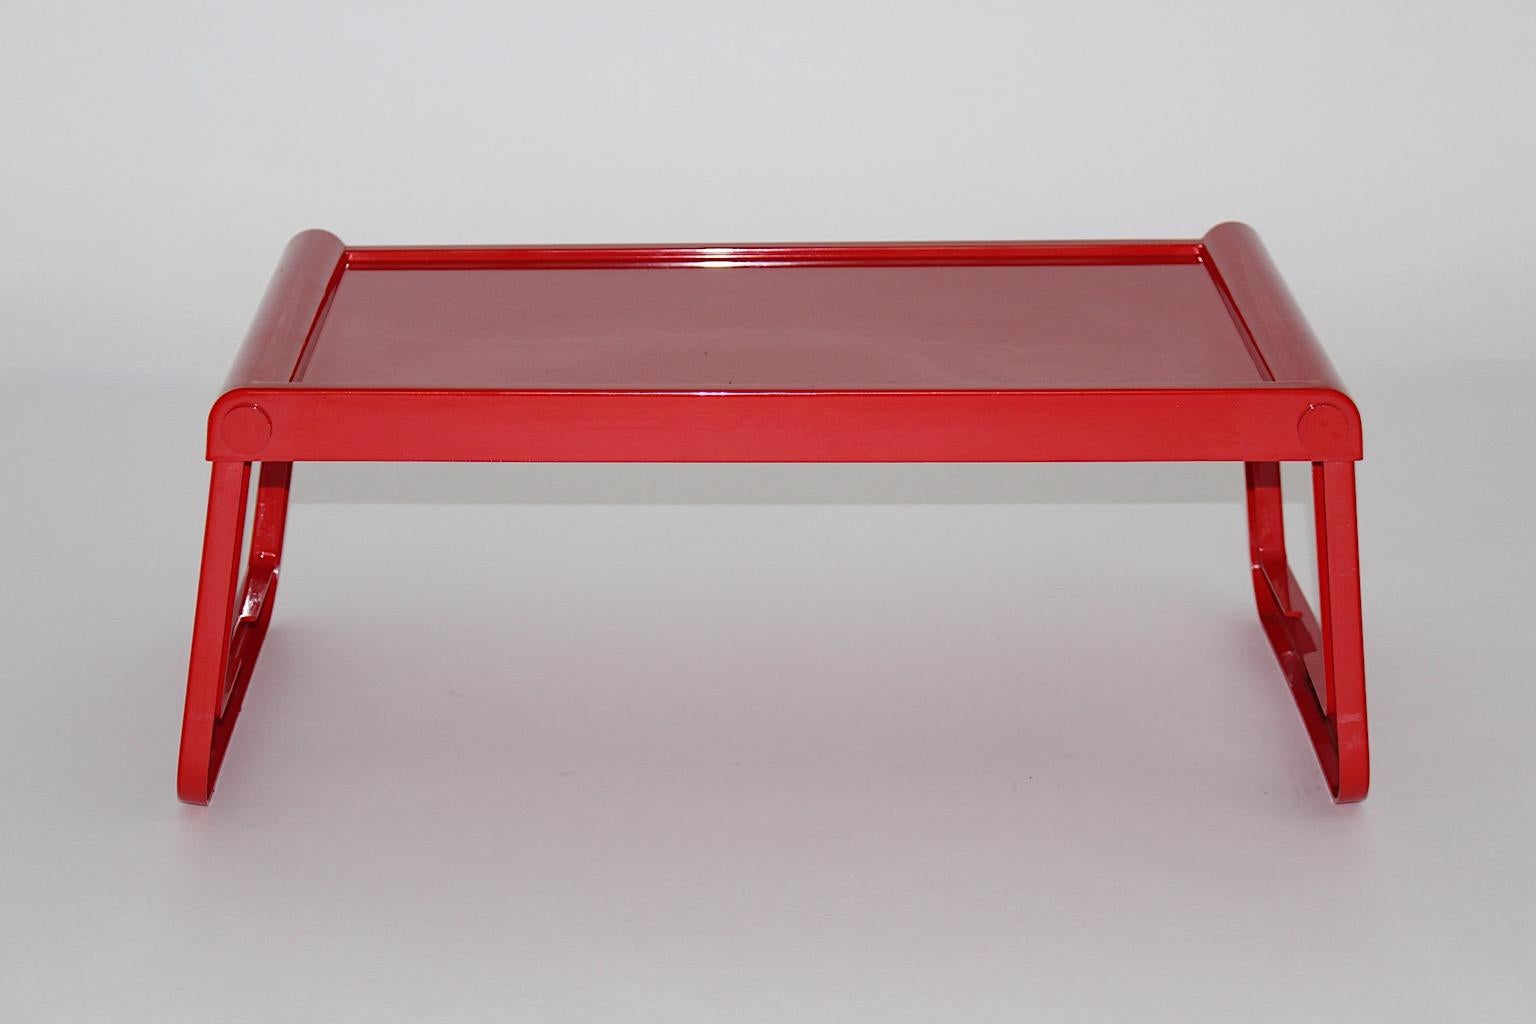 Soace Age rot Vintage Tablett Tisch, Gueridon oder Serviertisch Modell Pepito aus Kunststoff von Luigi Massoni für Guzzin 1970er Jahre Italien.
Ein farbenfroher, praktischer Vintage-Tisch mit klappbarem Fuß spiegelt die Farbe und das MATERIAL